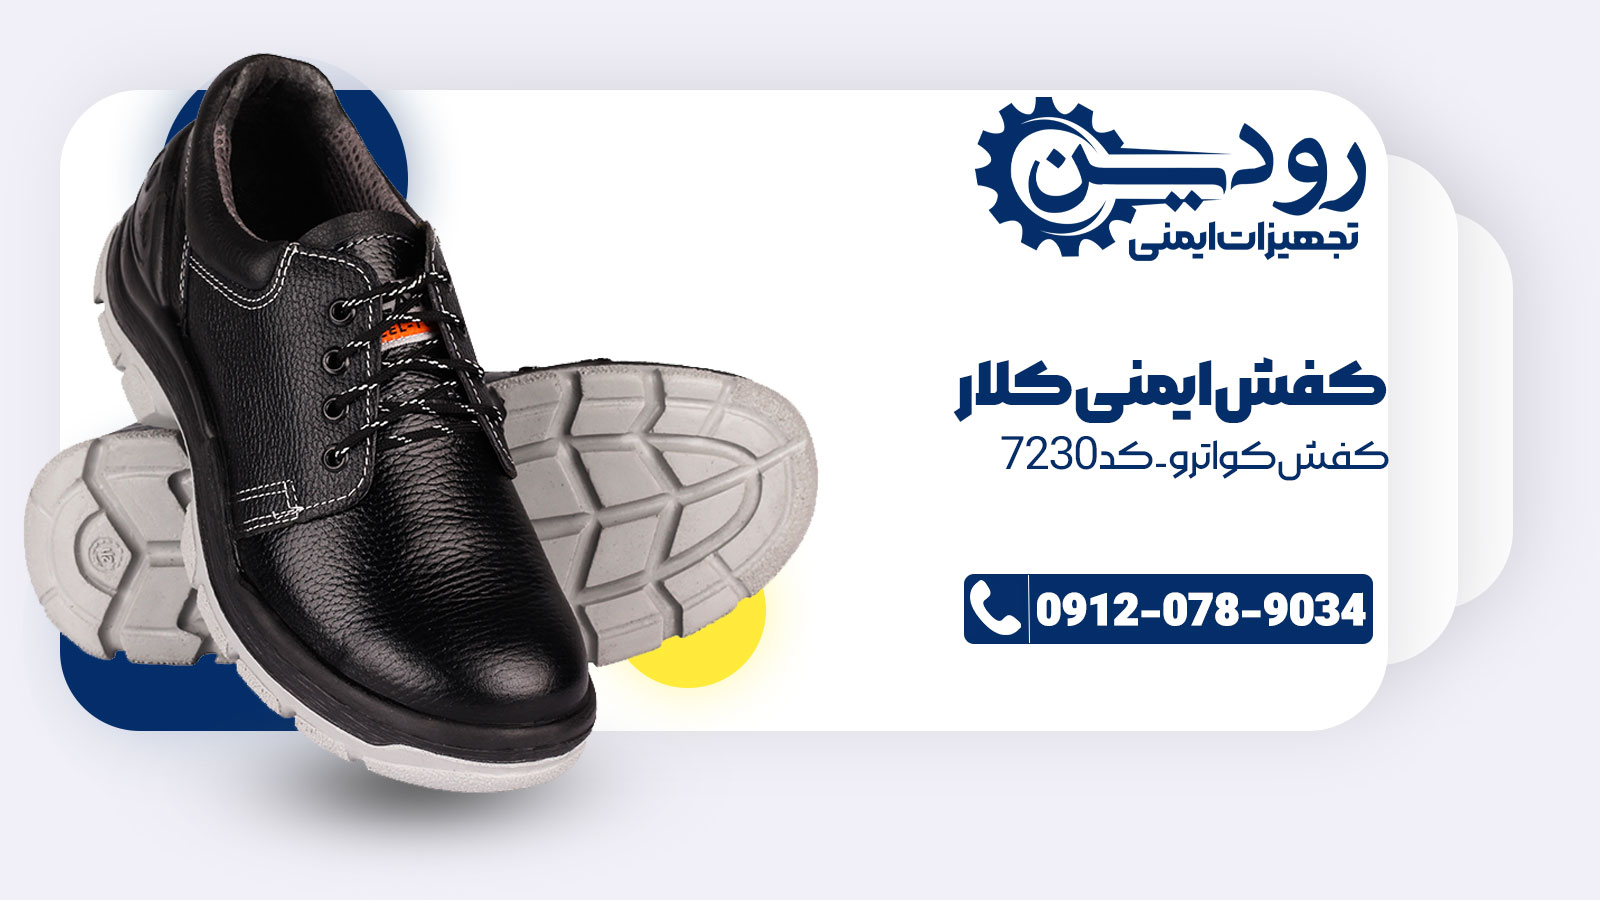 کاتالوگ مرکز فروش کفش ایمنی کلار دارای انواع کفش ایمنی است.